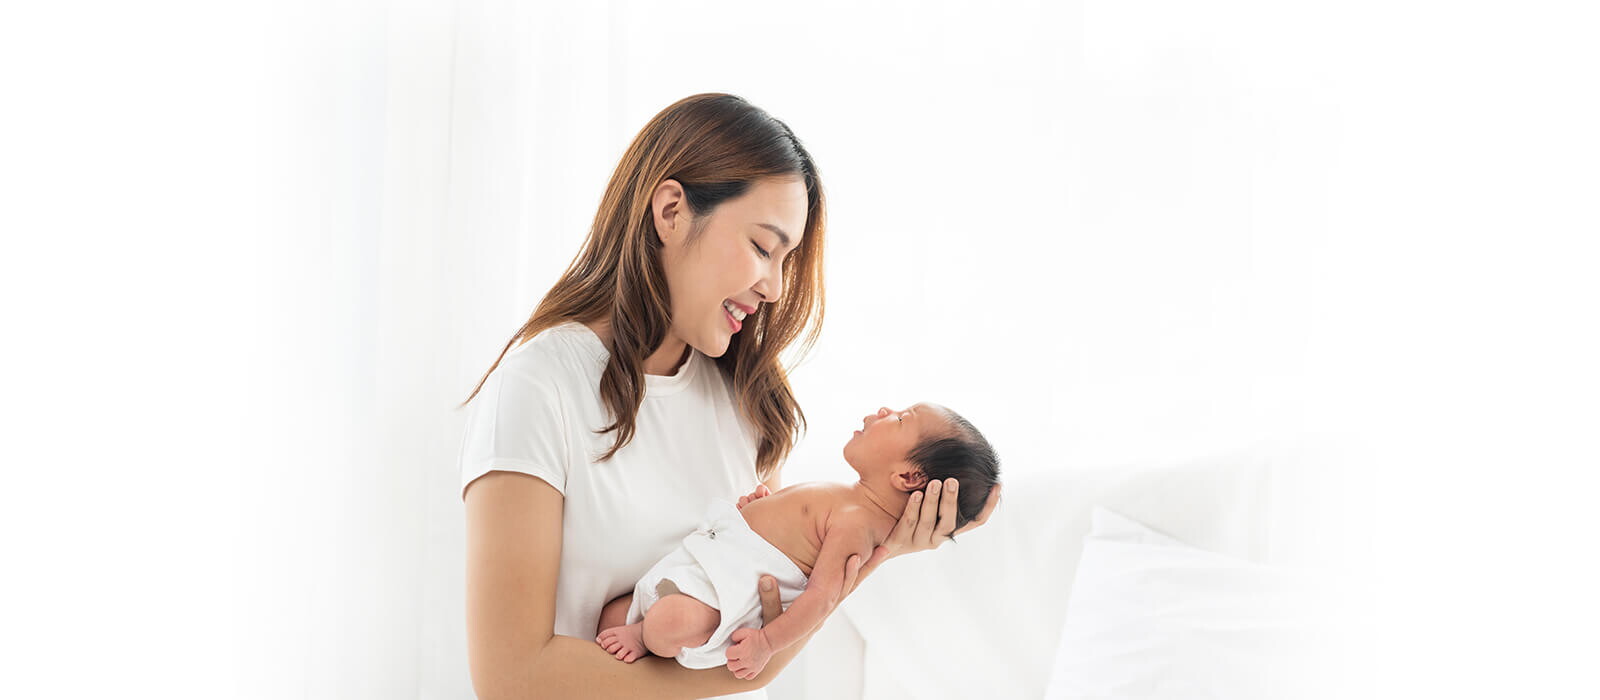 Cara Menggendong Bayi Sesuai Usia